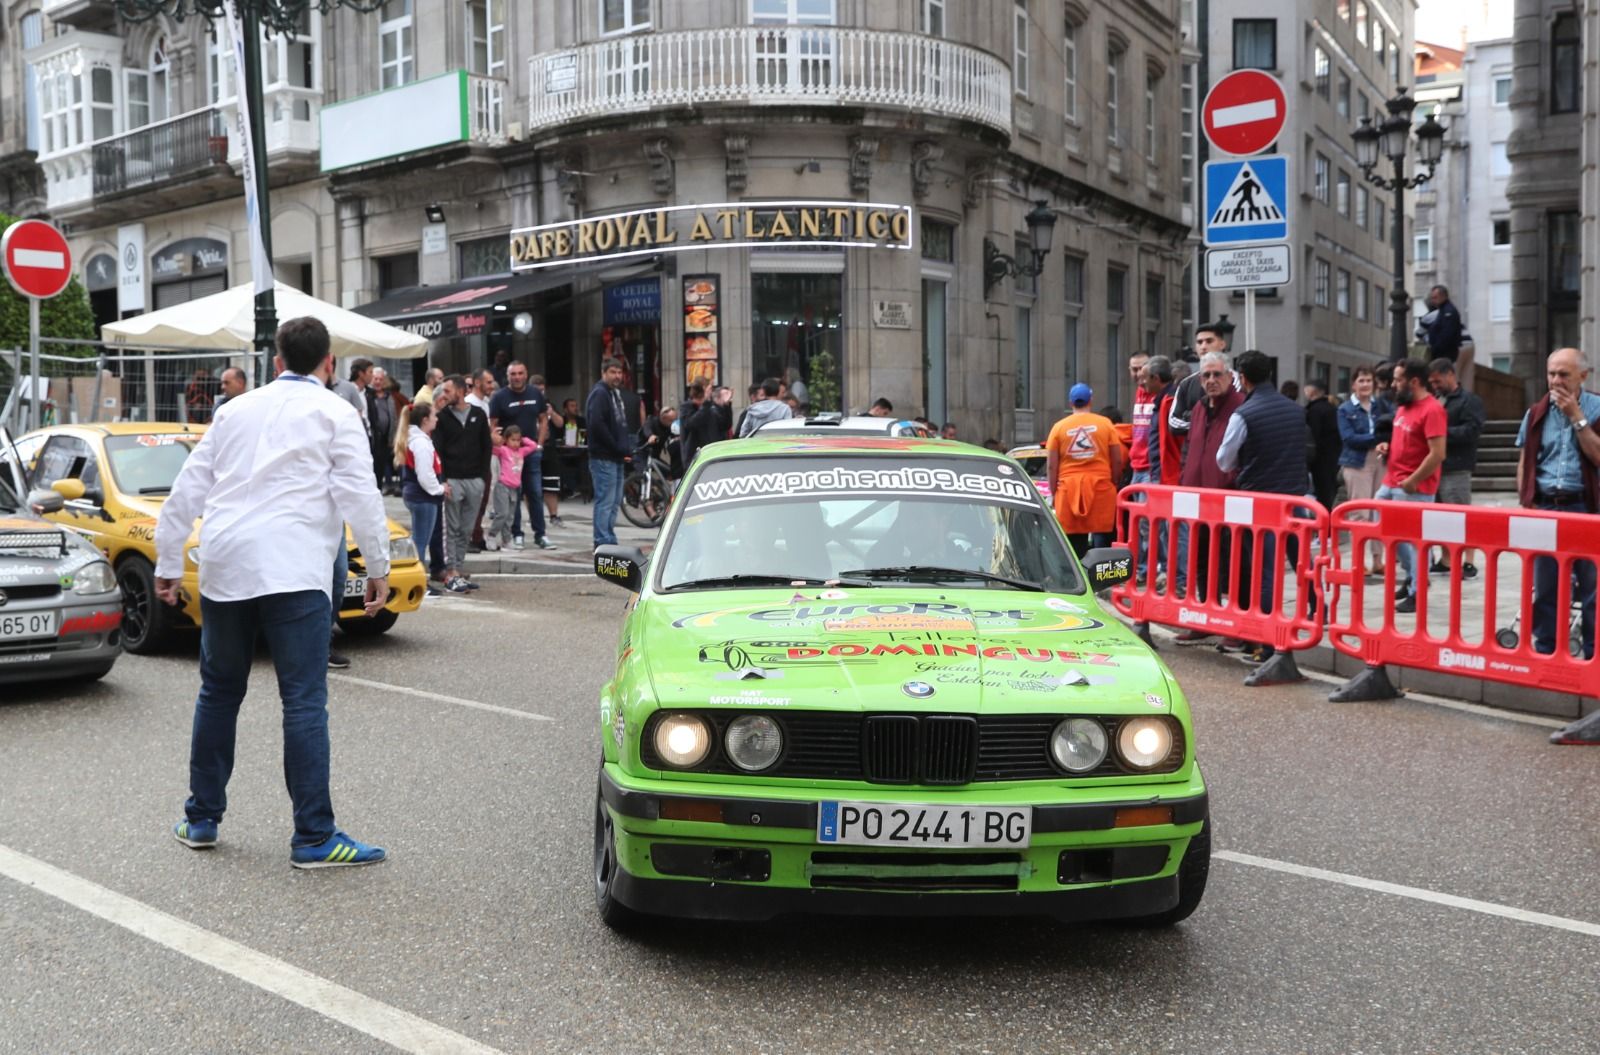 Los motores del Rallye Rías Baixas rugen en el centro de Vigo